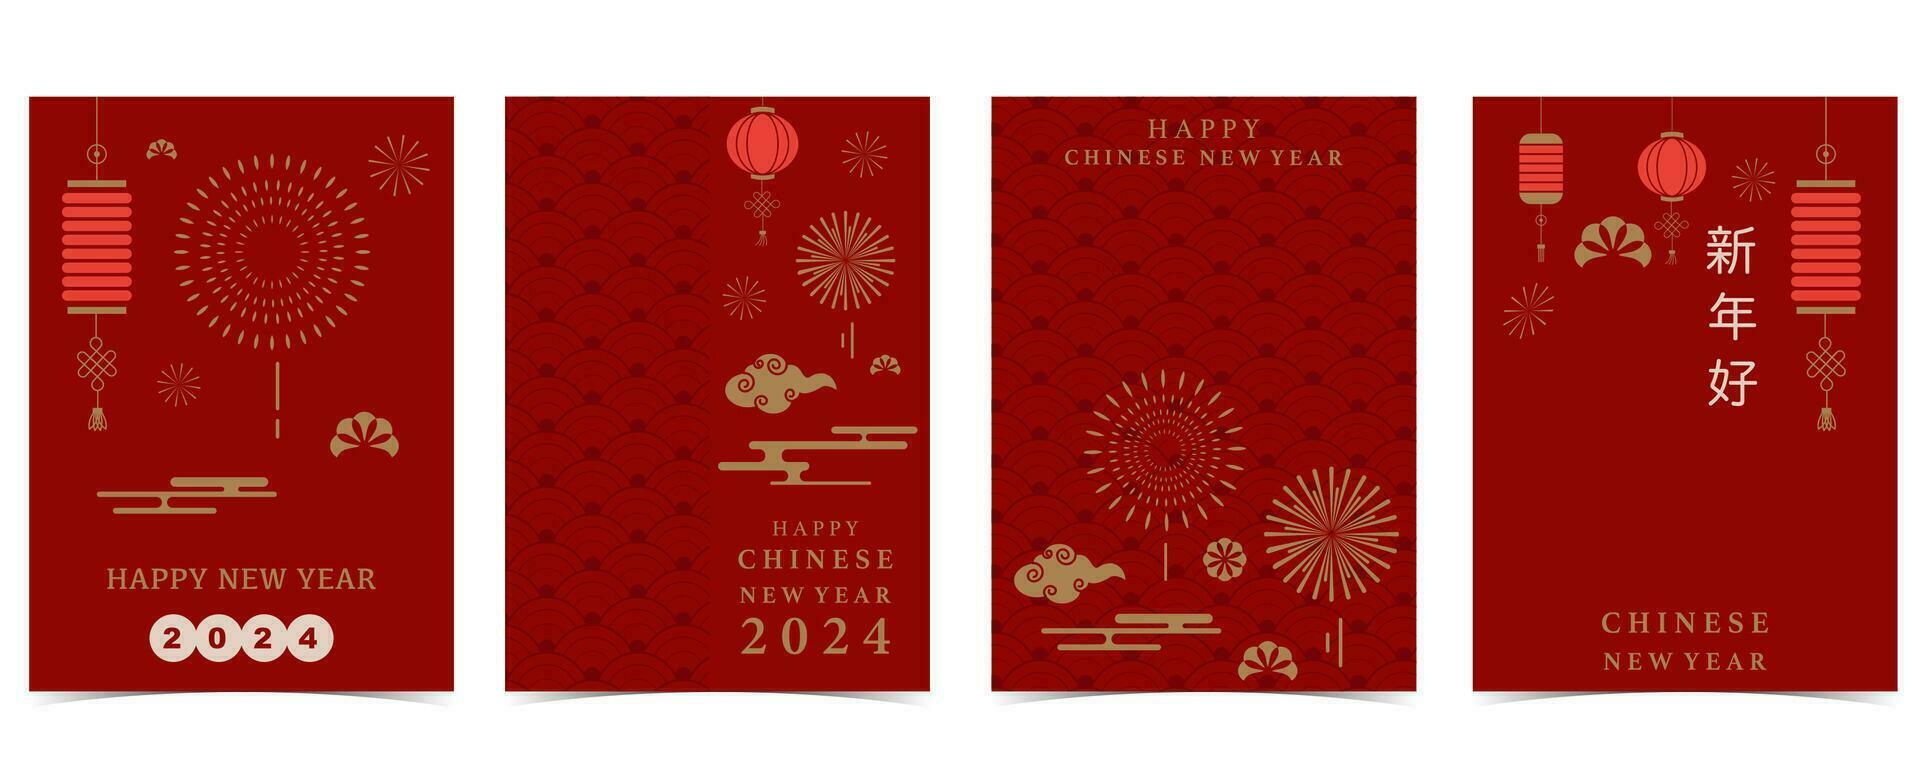 Chinesisch Neu Jahr Hintergrund mit Laterne, Feuerwerk.bearbeitbar Vektor Illustration zum Postkarte, A4 Größe